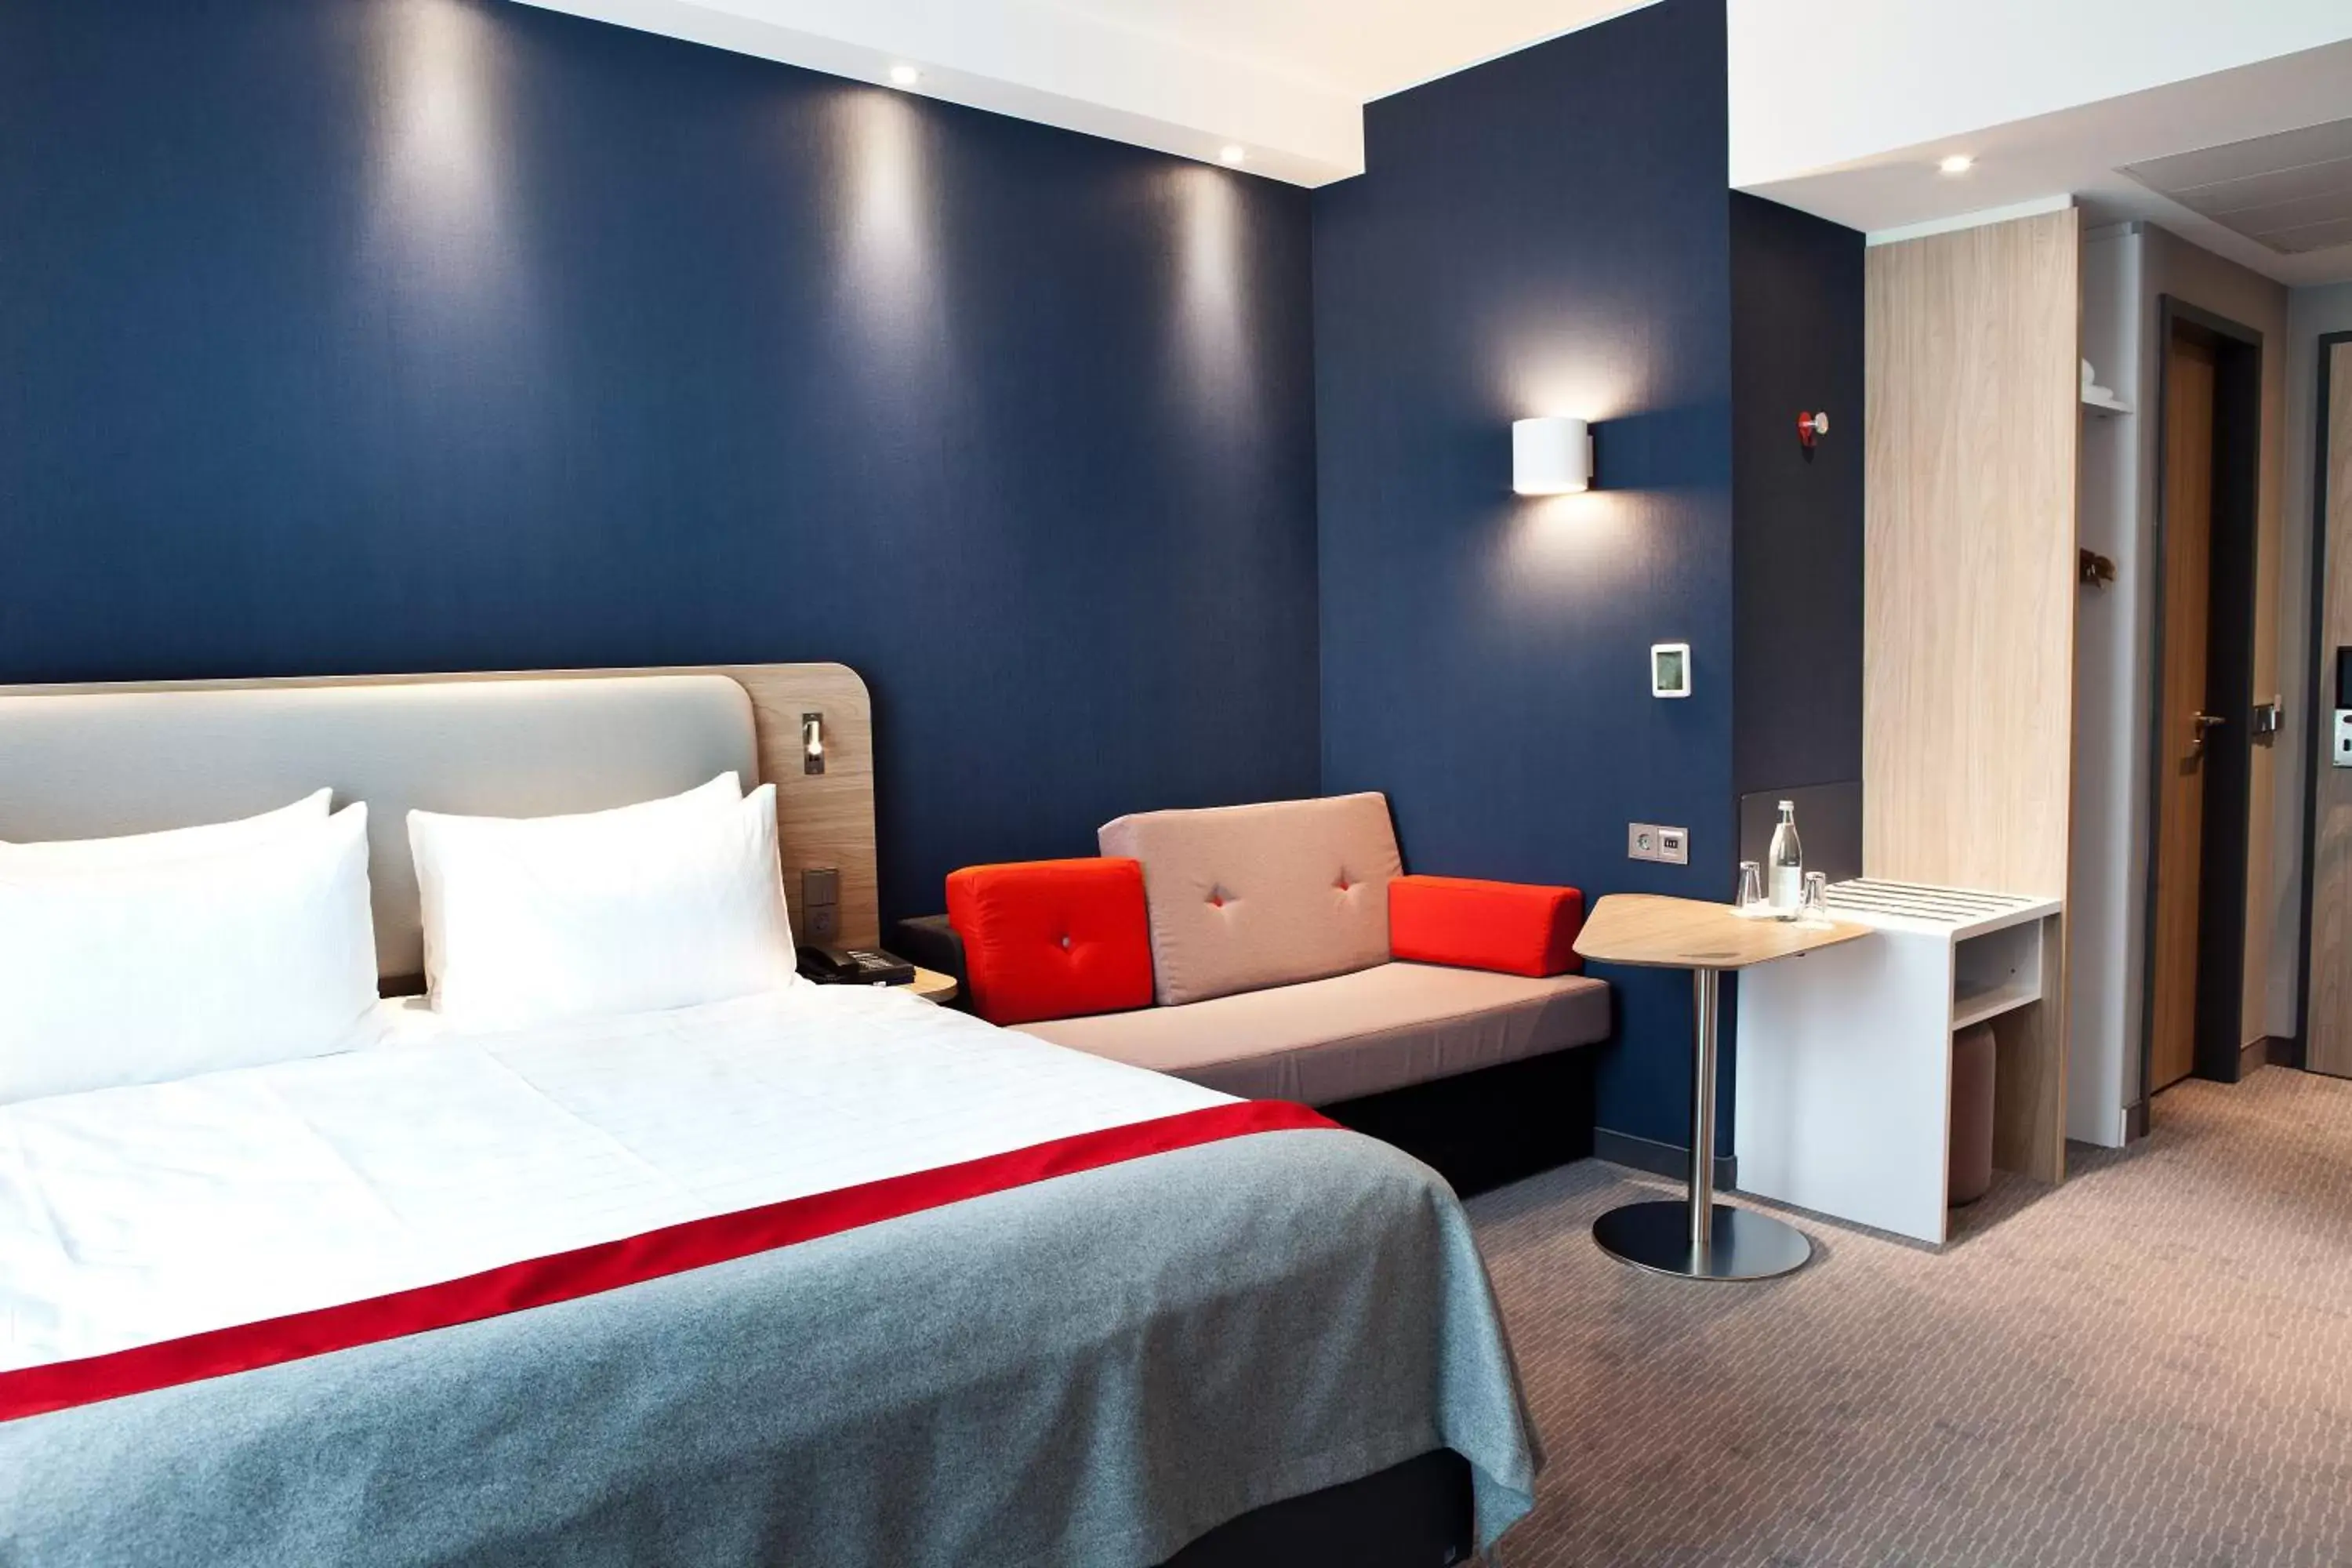 Bedroom, Bed in Holiday Inn Express - Recklinghausen